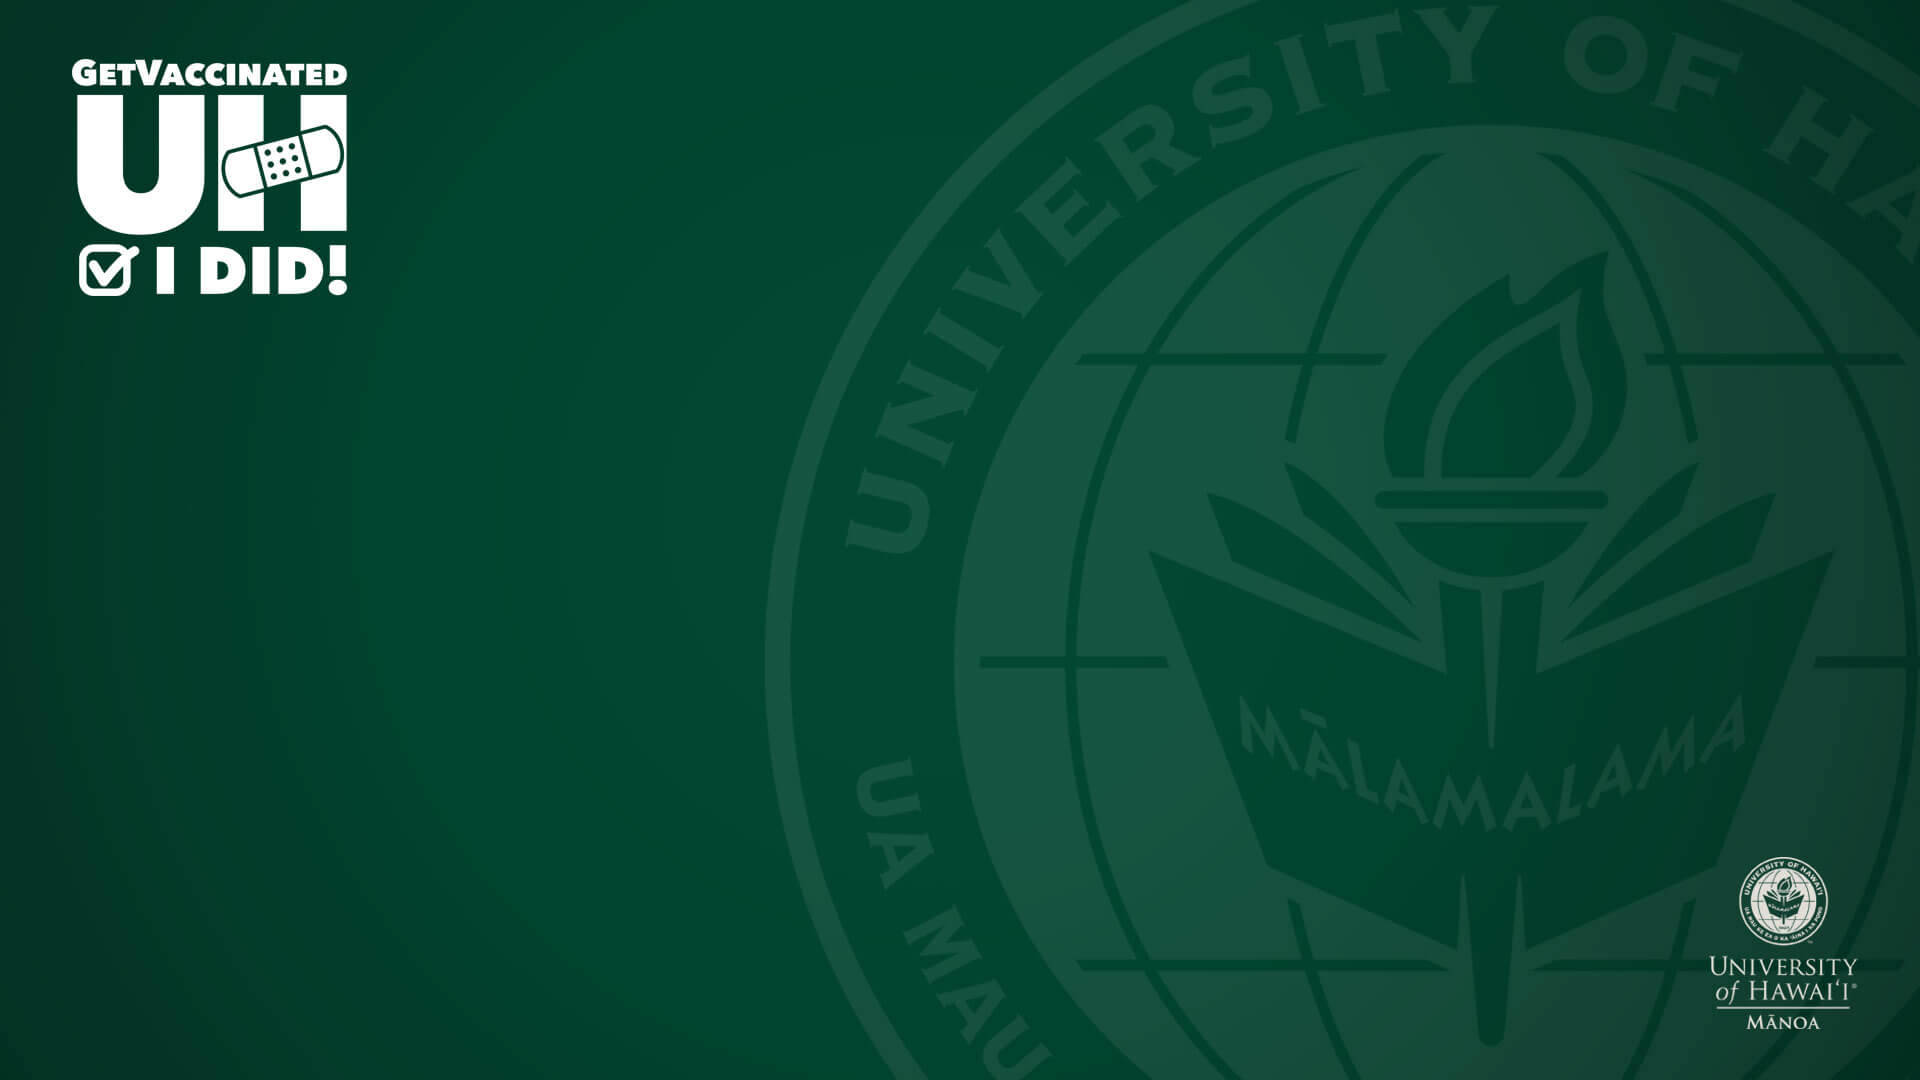 Fondode Pantalla Oscuro Con El Logo De La Universidad De Hawái En Verde. Fondo de pantalla